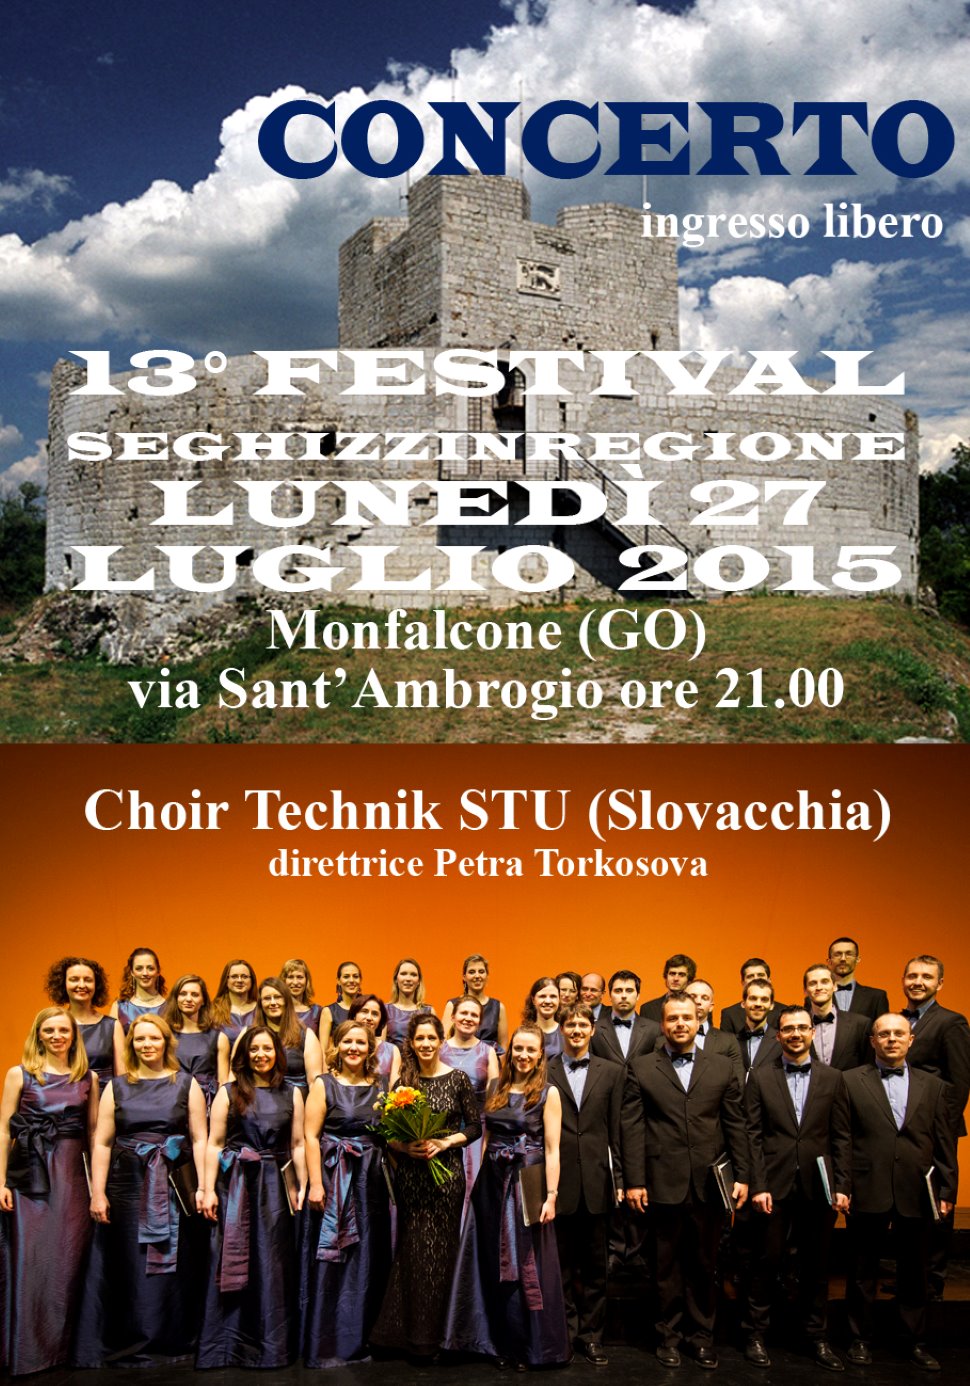 13° FESTIVAL SEGHIZZINREGIONE concerto a Monfalcone (GO)